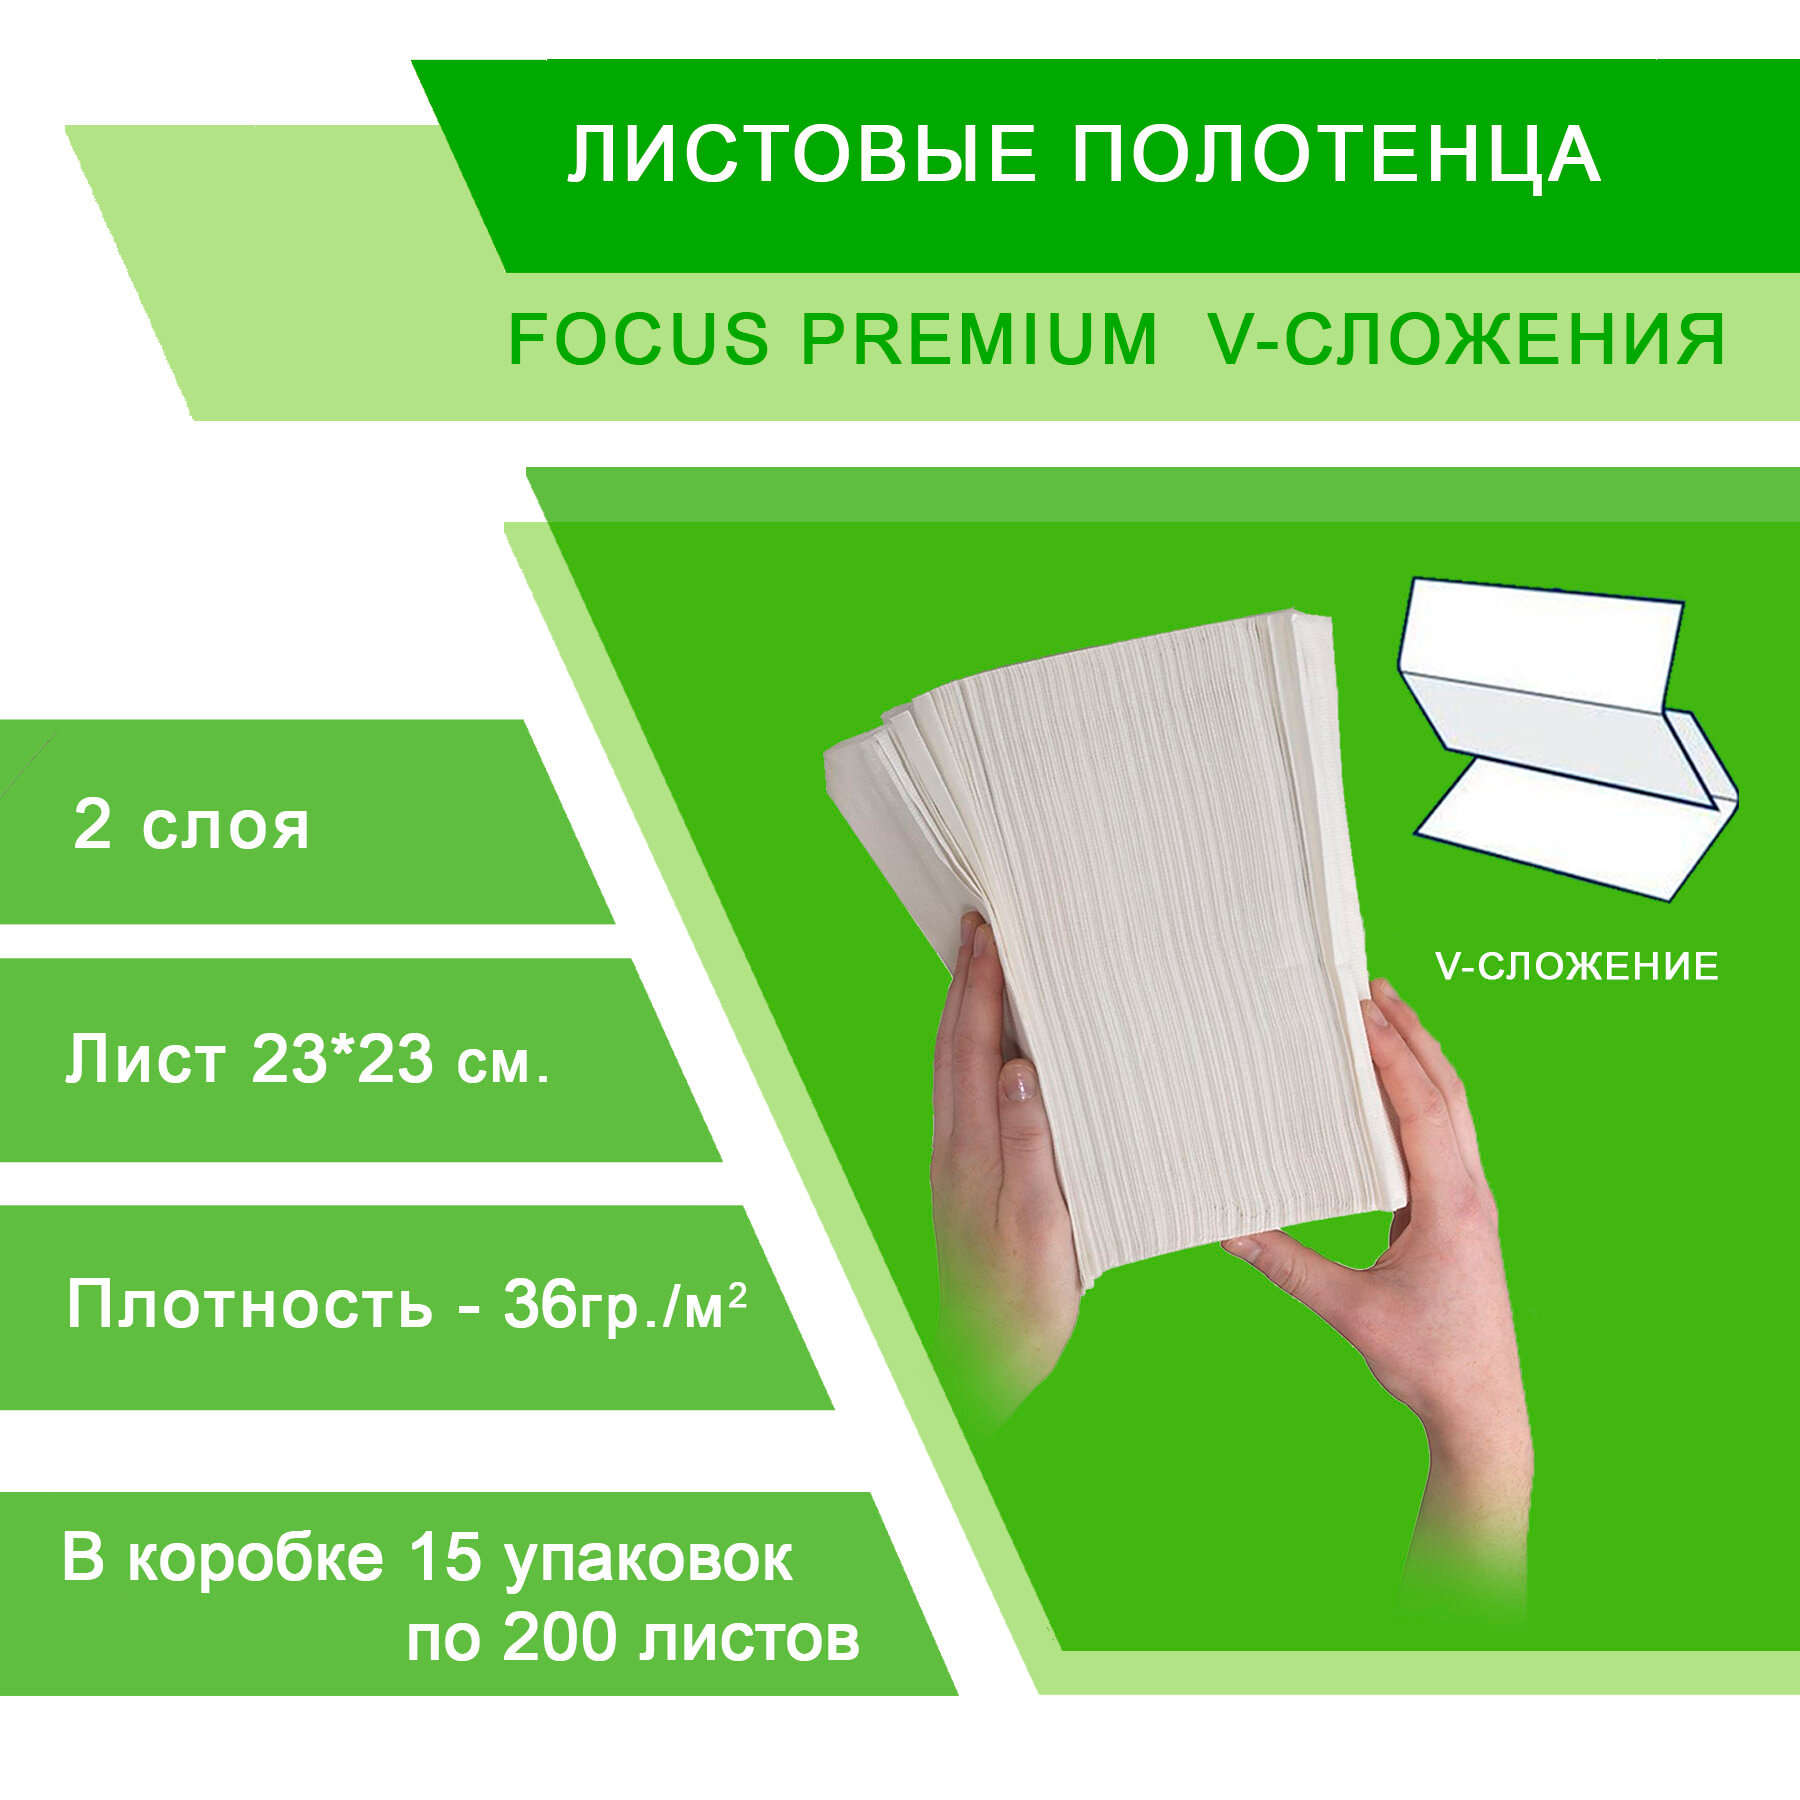 Полотенца Focus Premium 5049977 V-сложения, 15 пачек по 200 листов 23*23 см